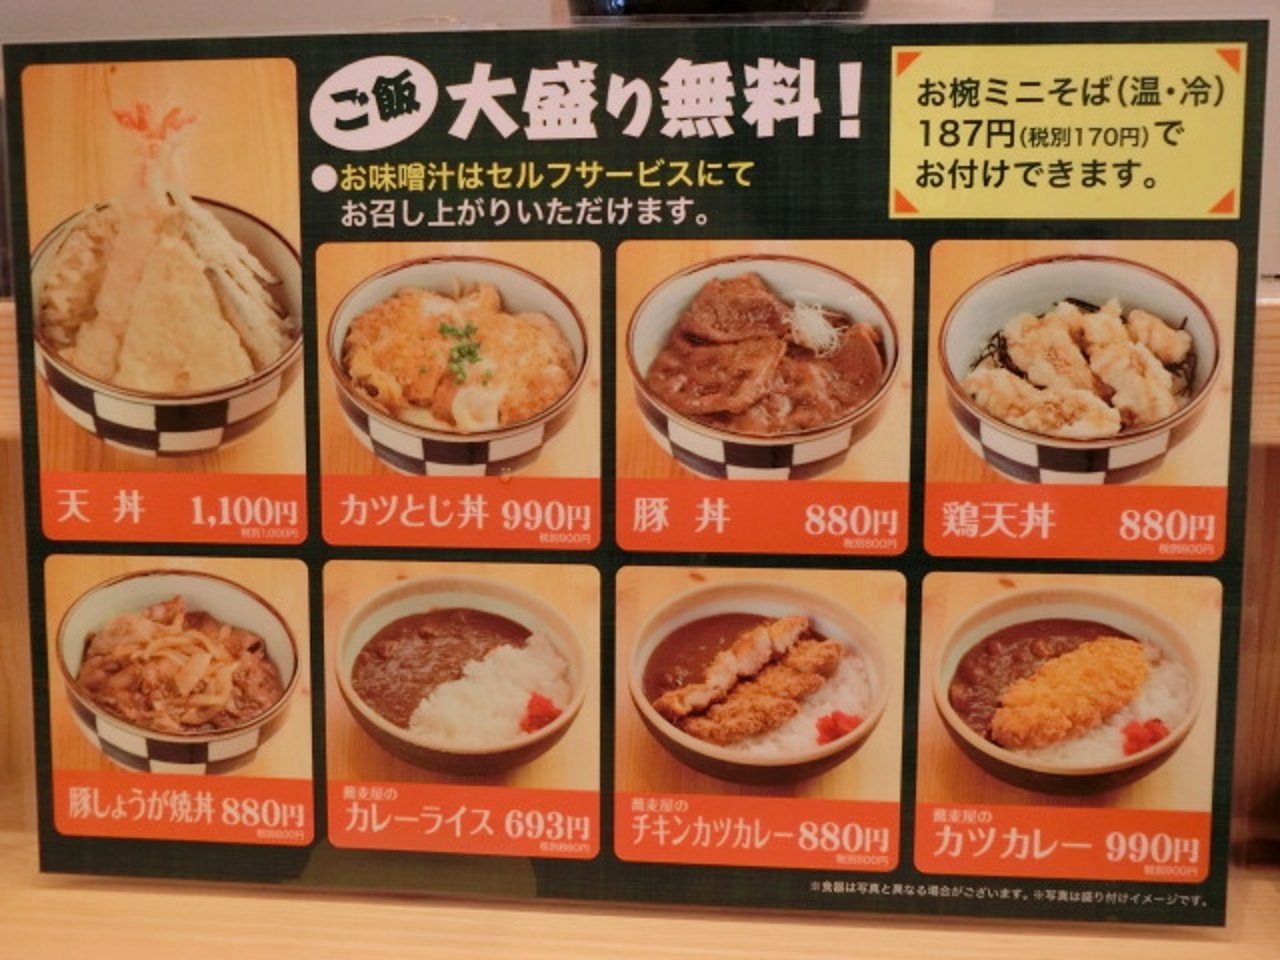 ご飯は大盛り無料。学生の方、たくさん食べたい方には嬉しいサービスですね。豚丼がメニューにあるのは、北海道ならではです。